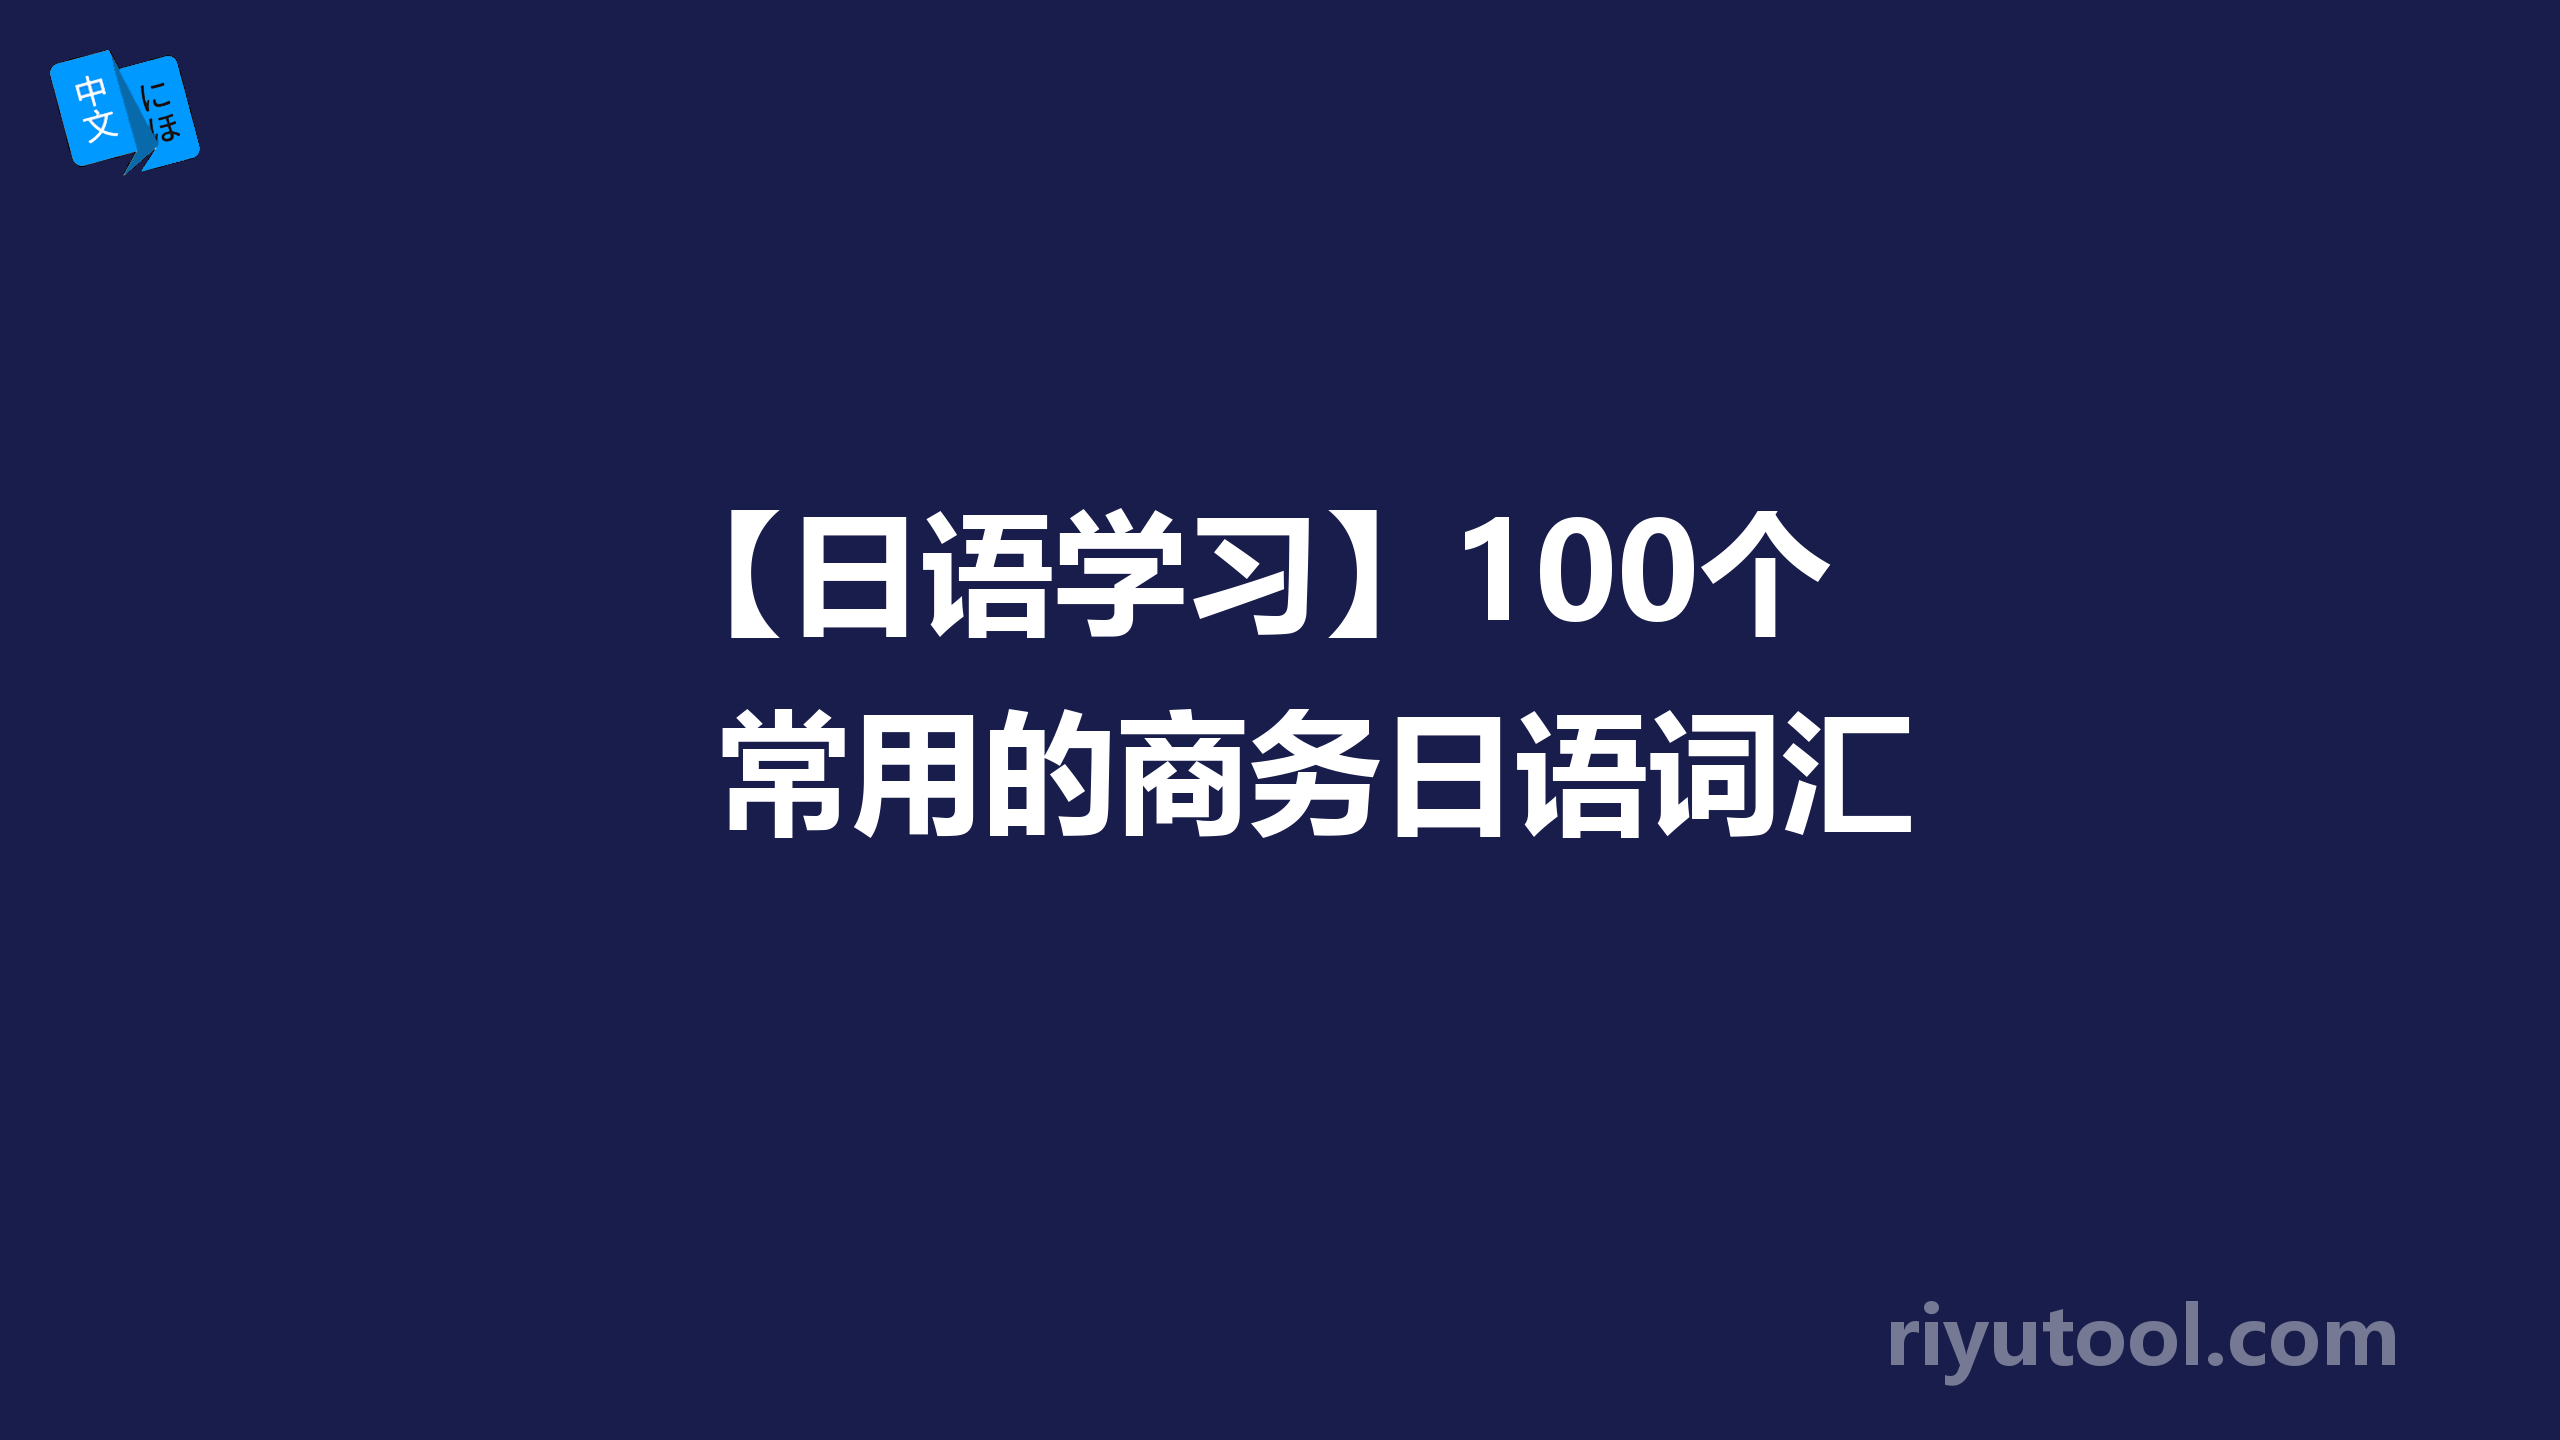 【日语学习】100个常用的商务日语词汇